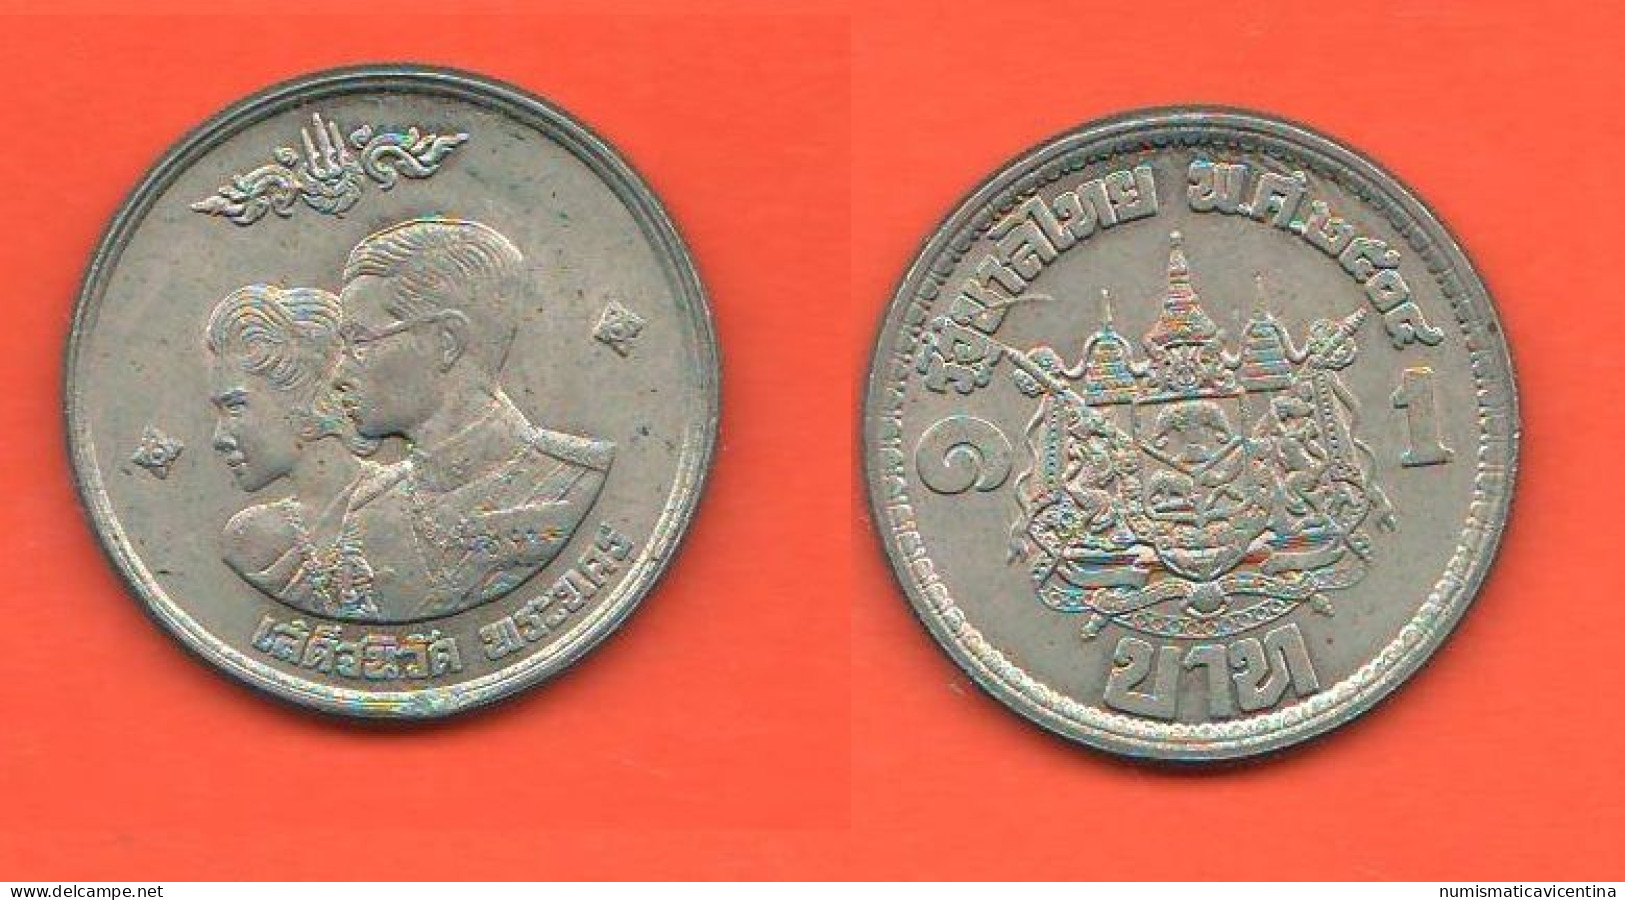 Thailandia 1 Baht 1961 Thaïlande Thailand King Rama IX° & Queen Sirikit  Nickel Coin - Thailand